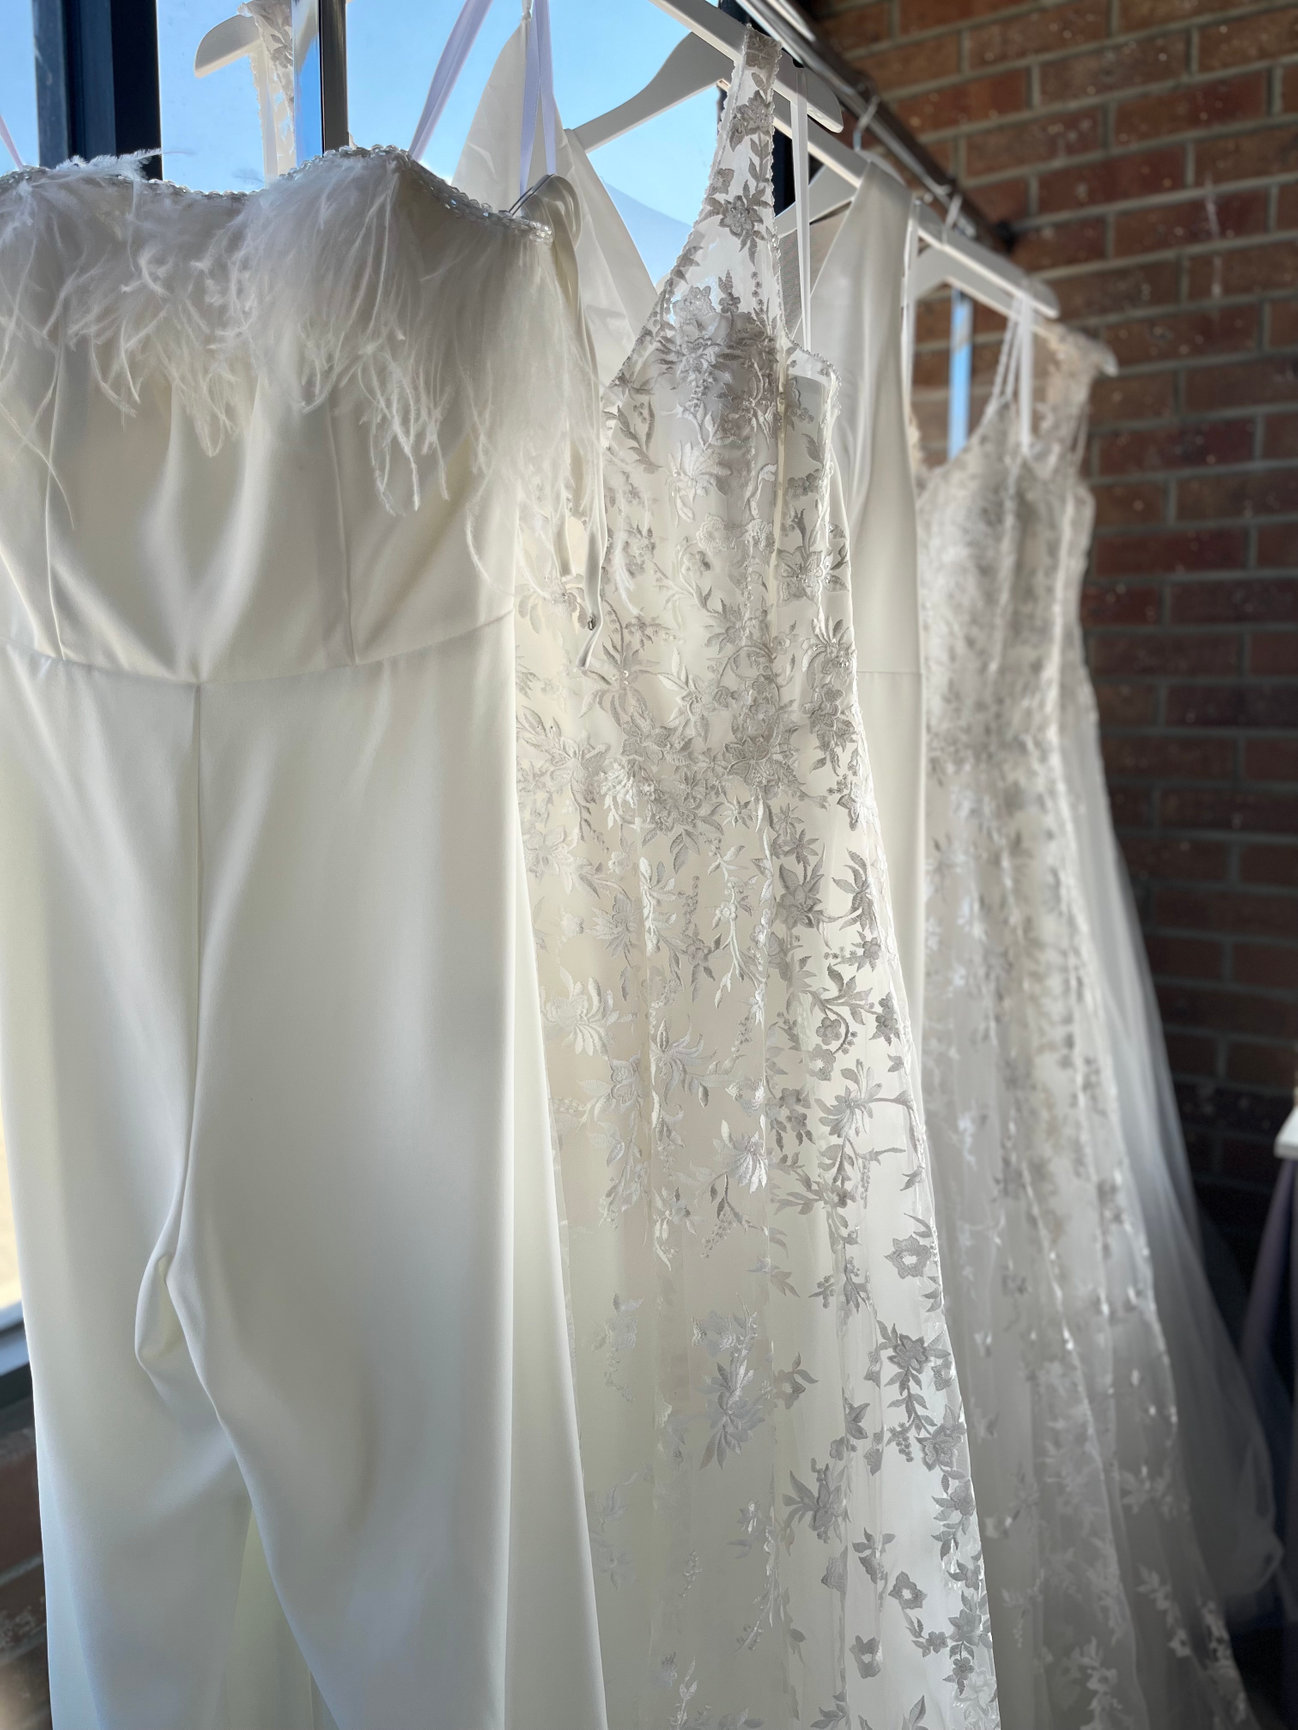 Fancy Frocks BridalPromTuxedo  Dress  Attire  Murrells Inlet SC   WeddingWire